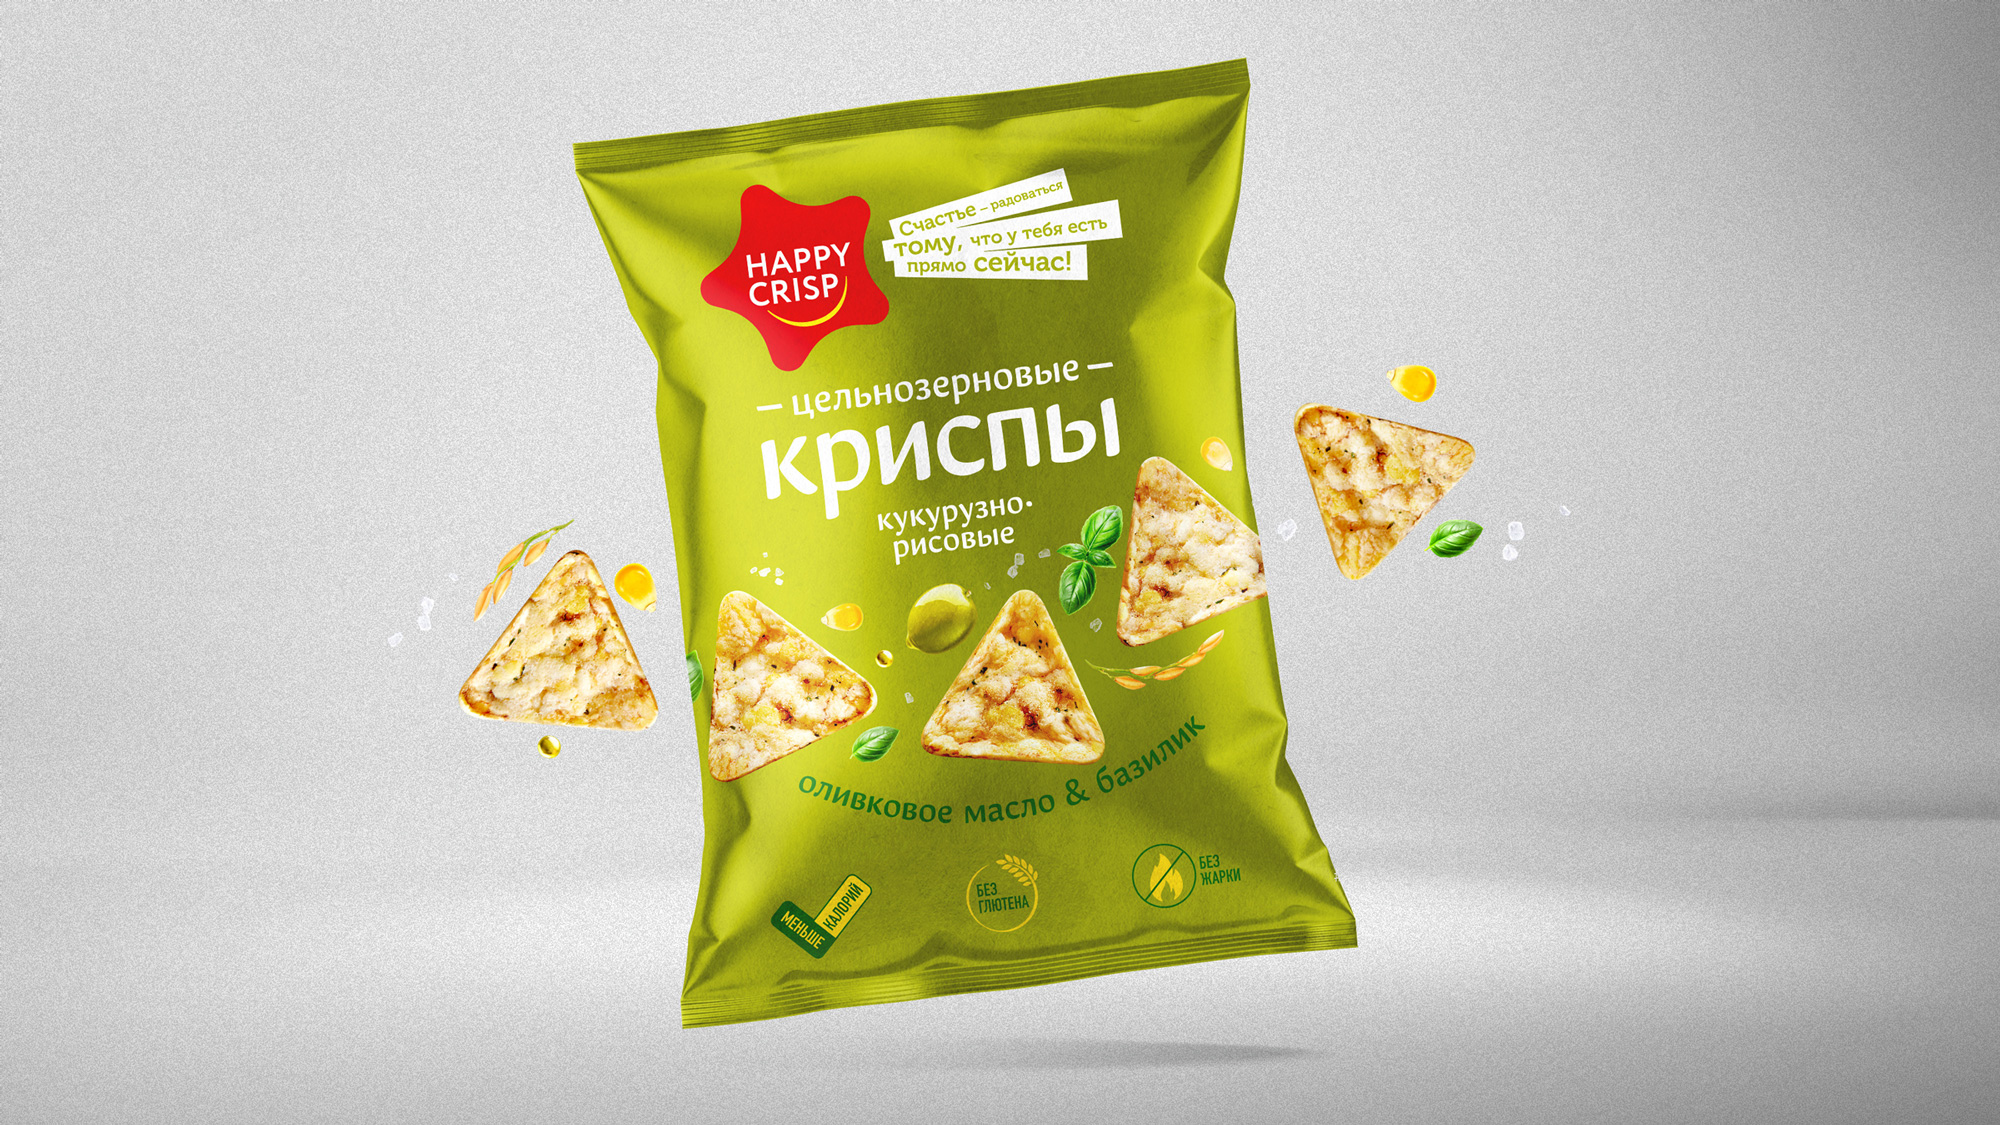 Package Design Wholegrain Chips Happy Crisp - World Brand Design Society